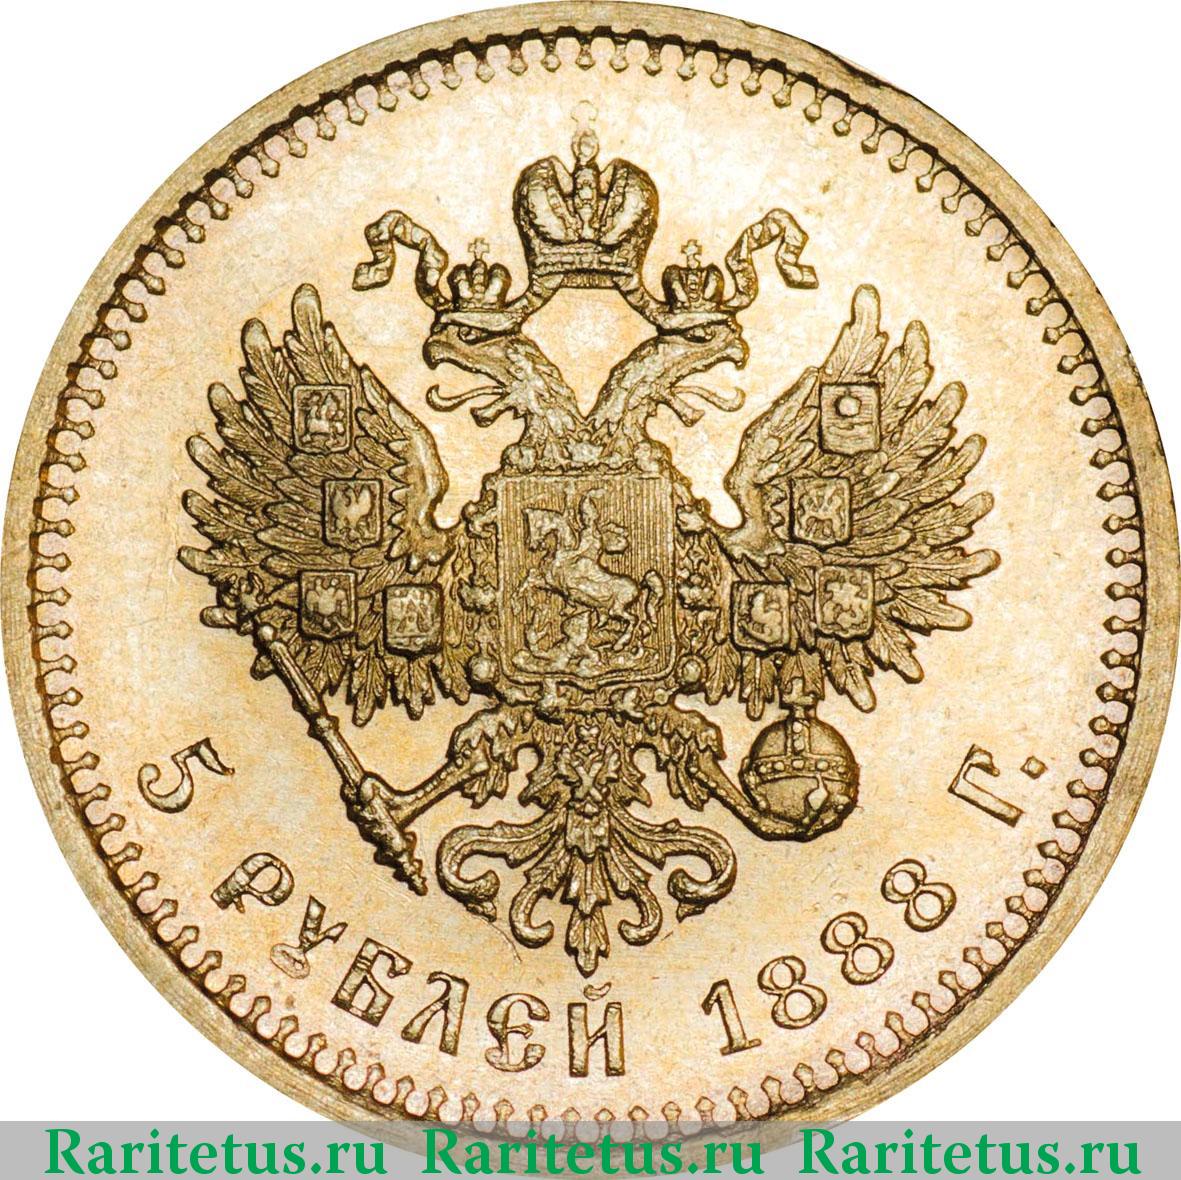 Аукцион 5 рублей. Царские монеты 1889 года. Царская монета 5 рублей. Монета 1888 года.